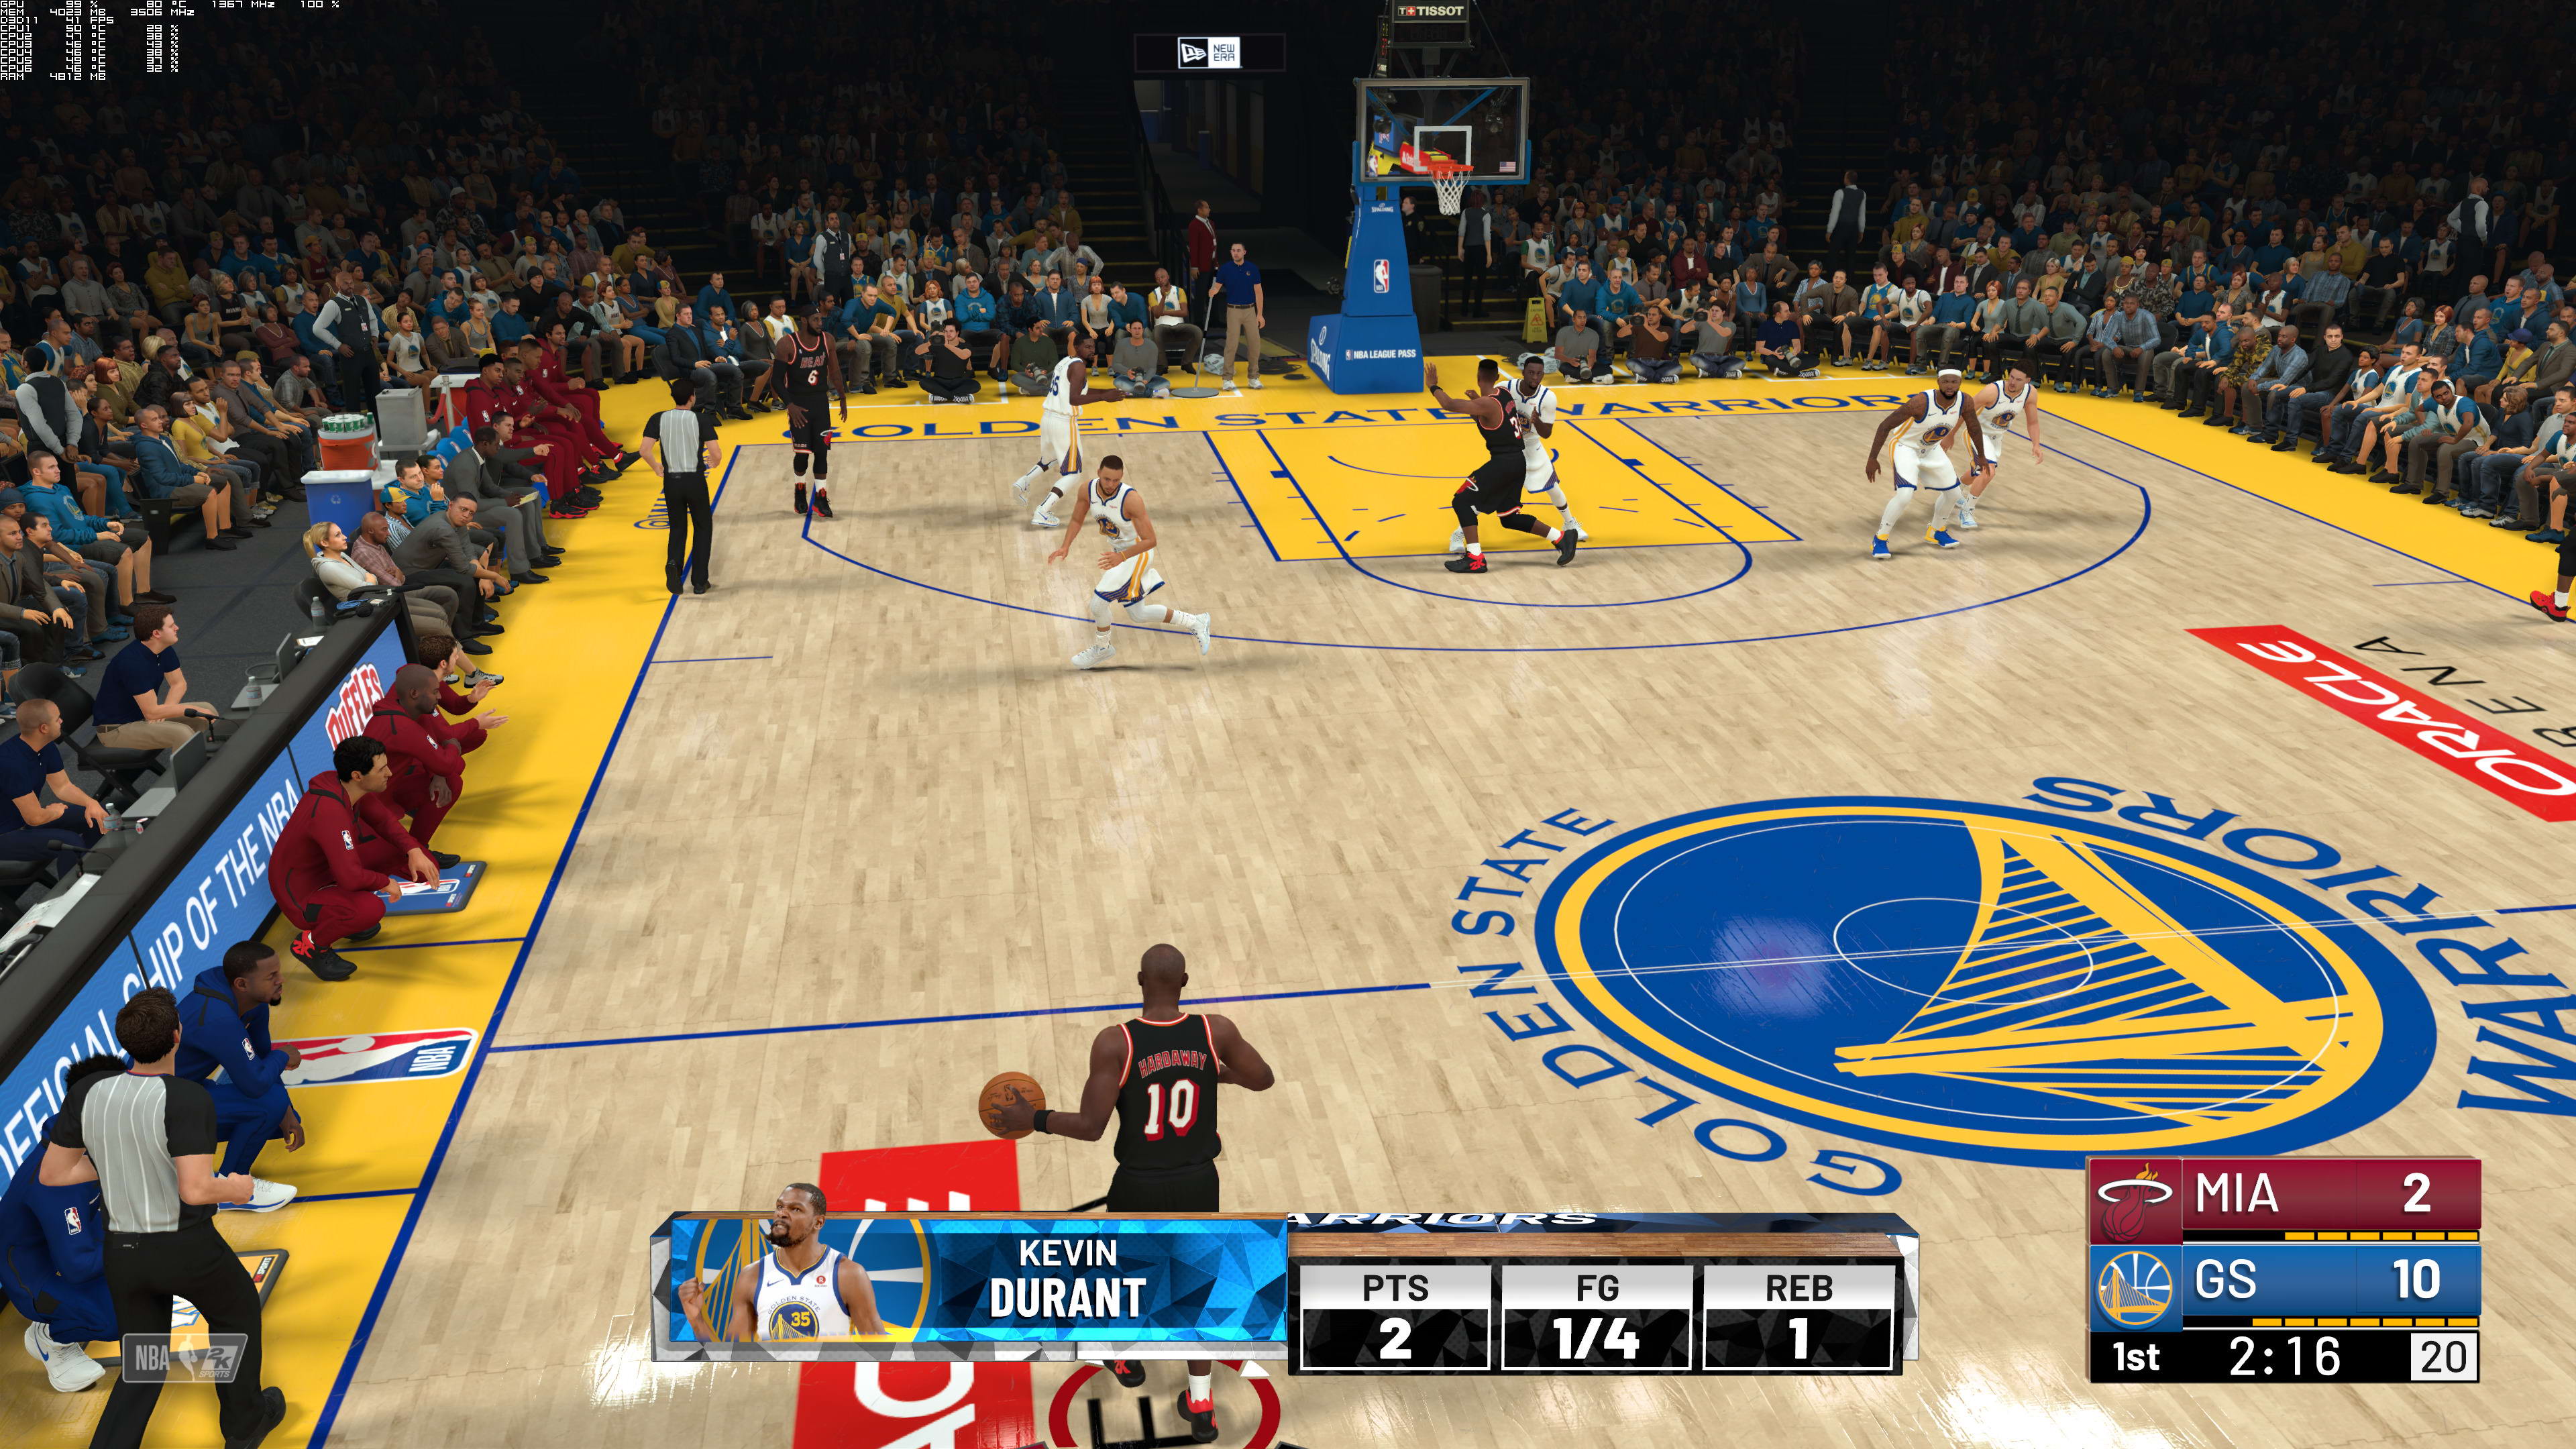 《NBA 2K19》4K高清截圖 這遊戲畫面你覺得進步了麽